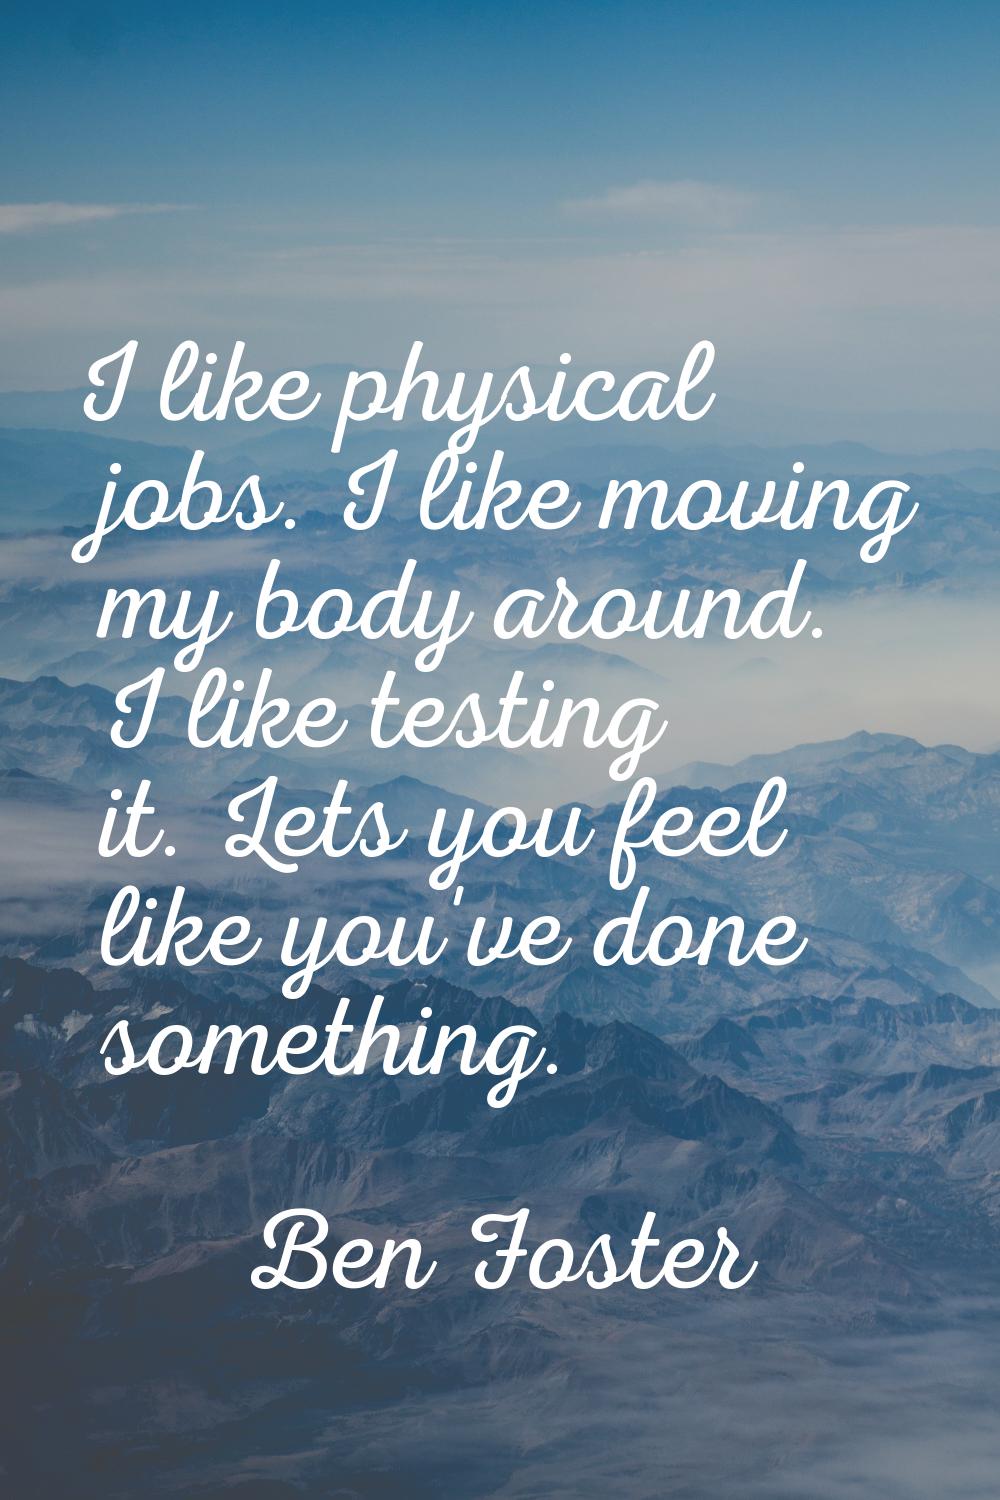 I like physical jobs. I like moving my body around. I like testing it. Lets you feel like you've do